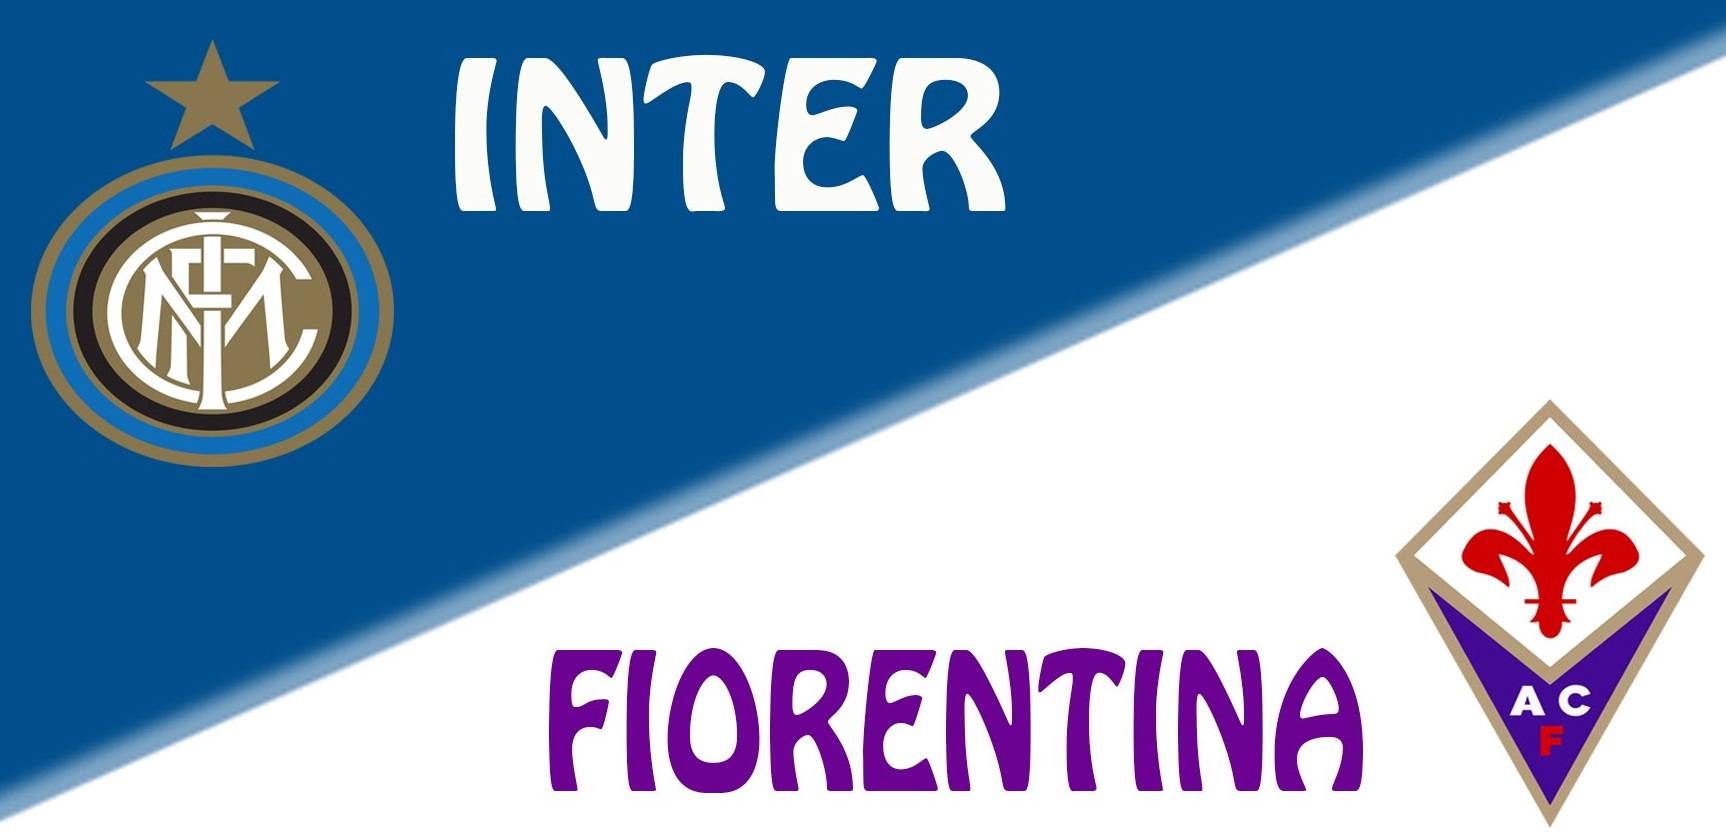 İnter Fiorentina Maçı İddaa Tahmini 20.8.2017